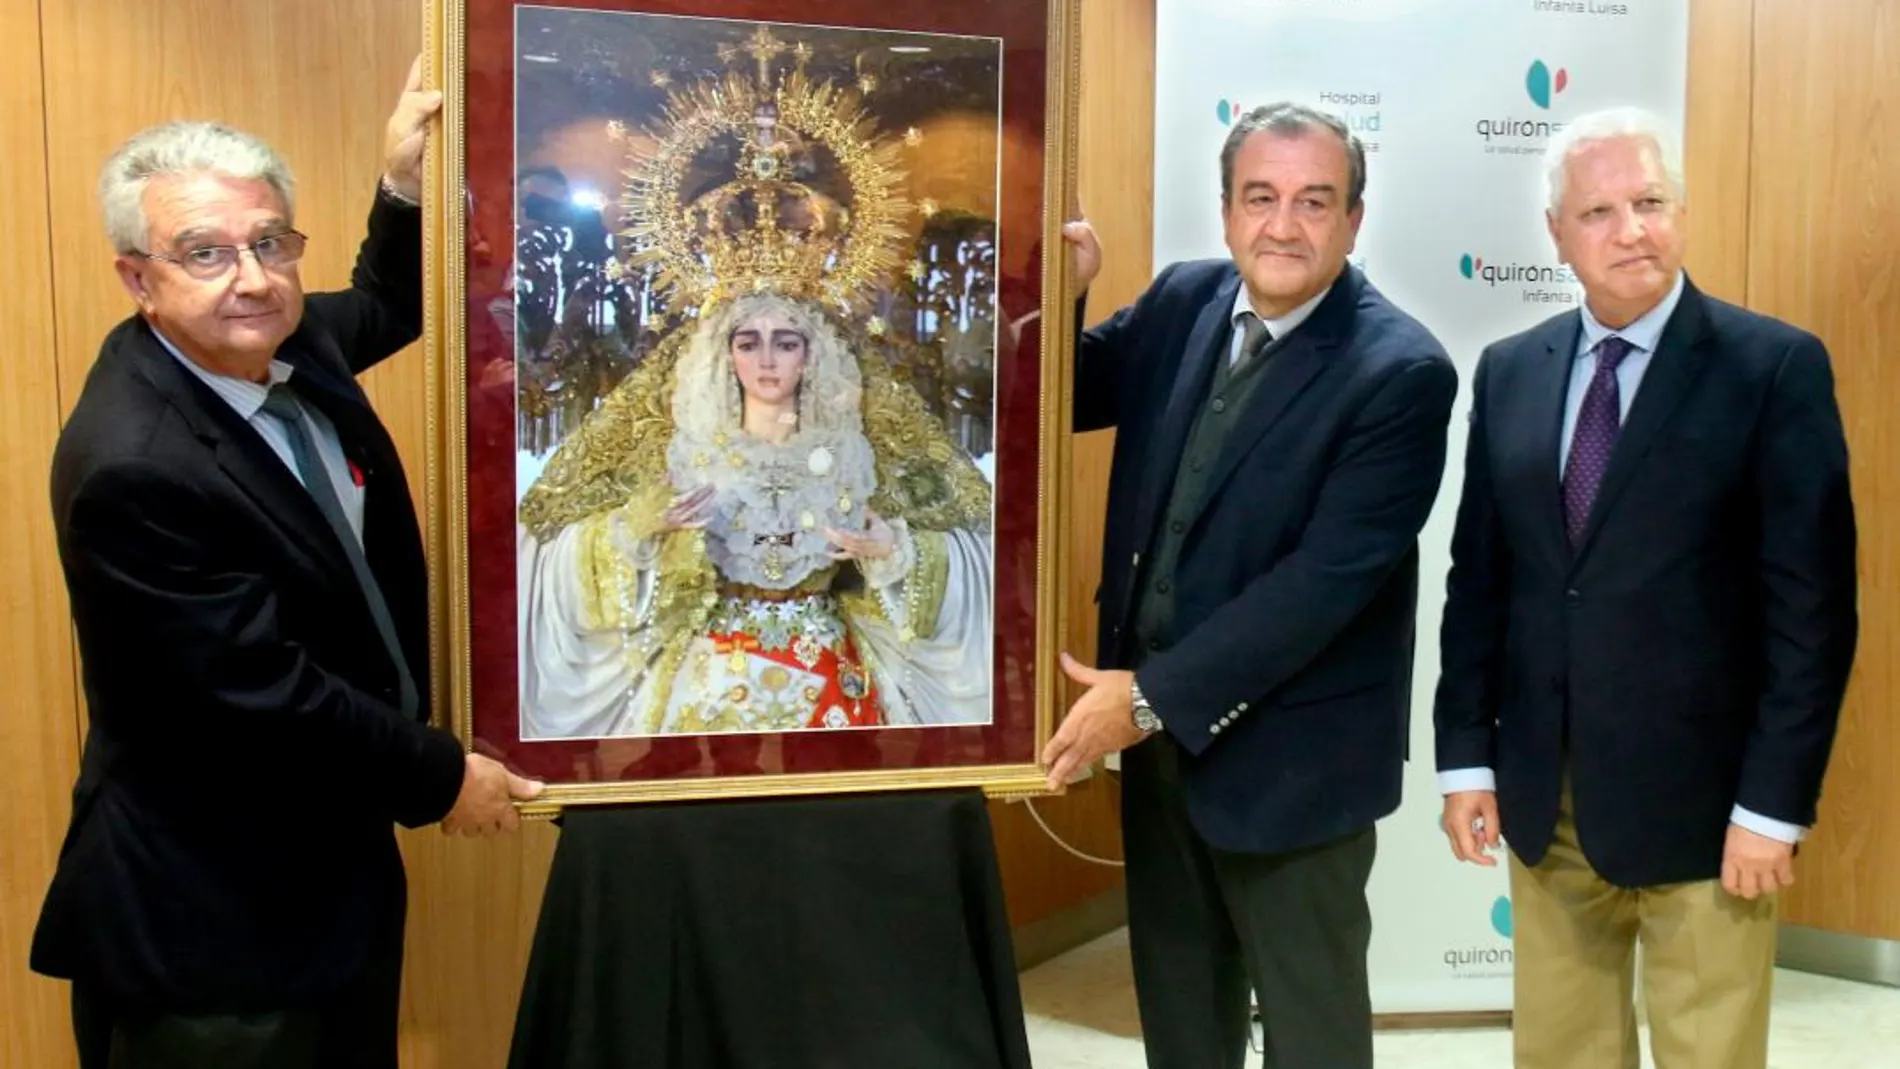 La Virgen de la Salud de San Gonzalo ocupará un lugar privilegiado en el Hospital Quirónsalud Intanta Luisa / Foto: La Razón